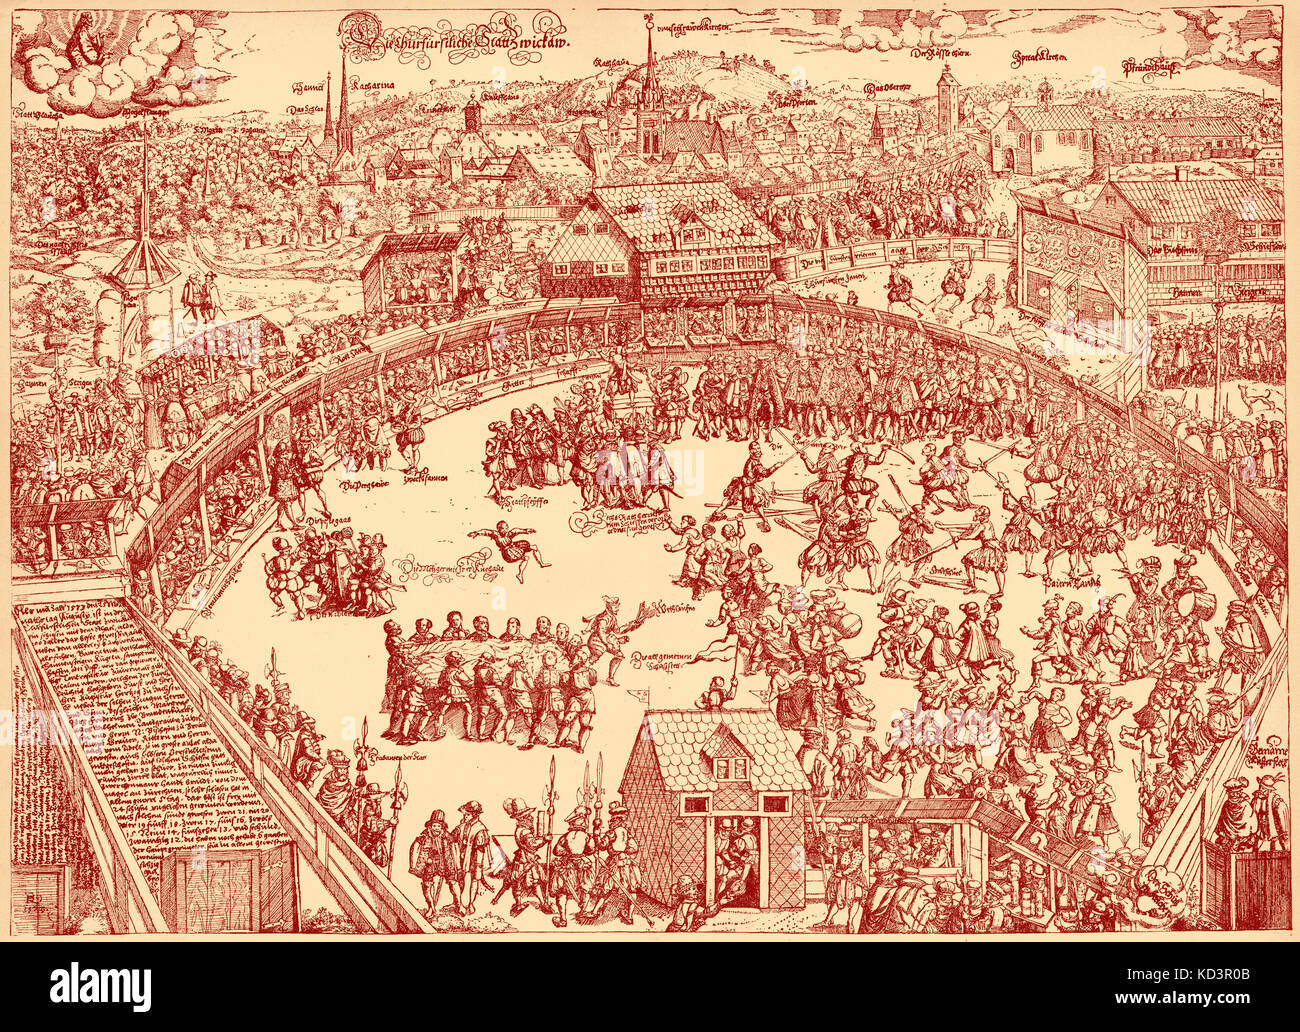 Festival in der Turnier-Platz Zwickau, zeigen verschiedene Formen der Unterhaltung. August 1573. Radierung von Paulus Reinhart. Stockfoto